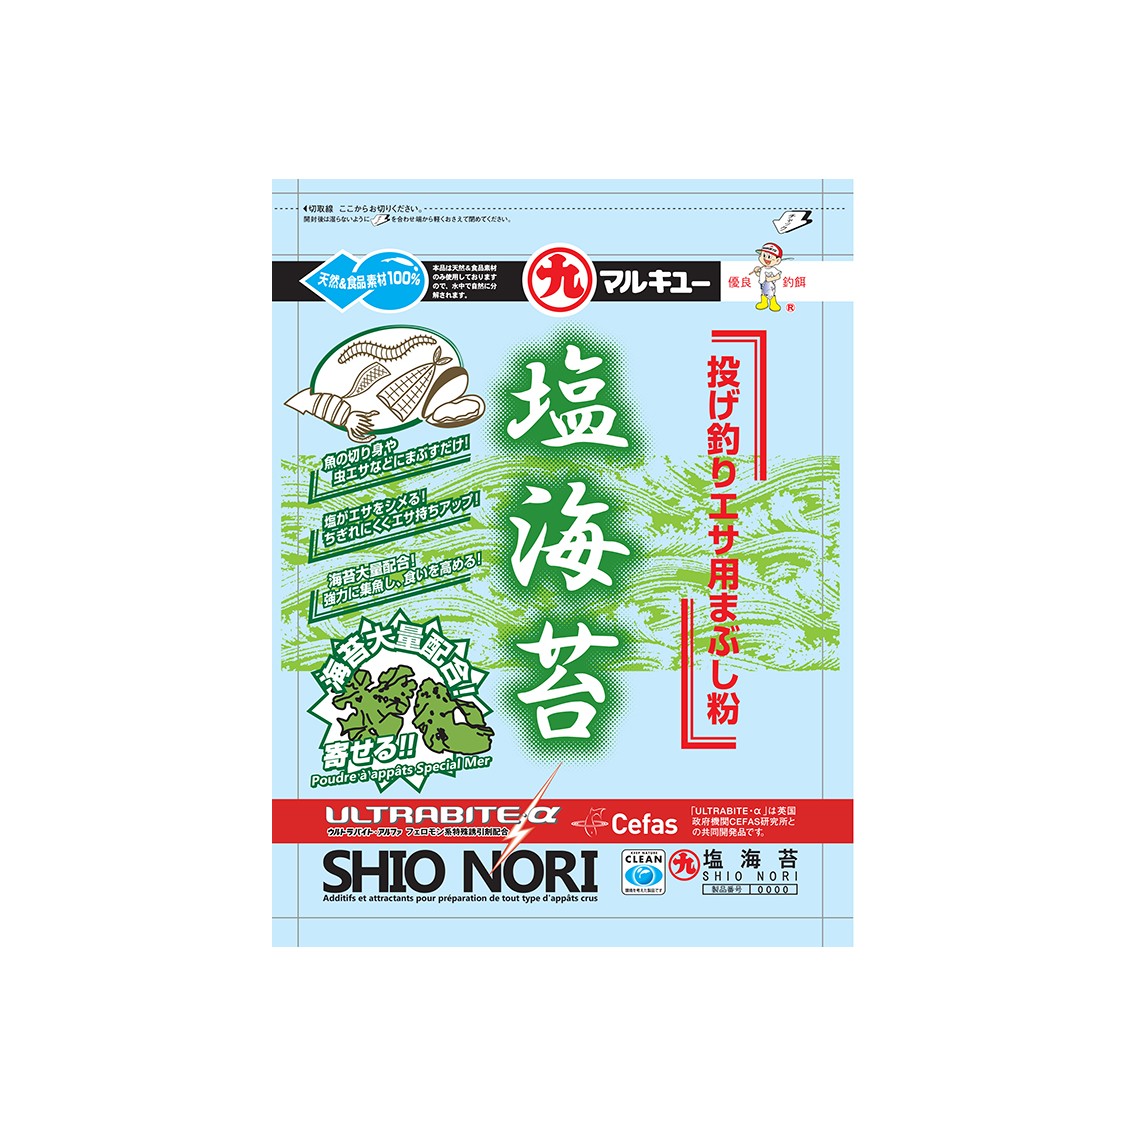 SHIO NORI (tarif net)